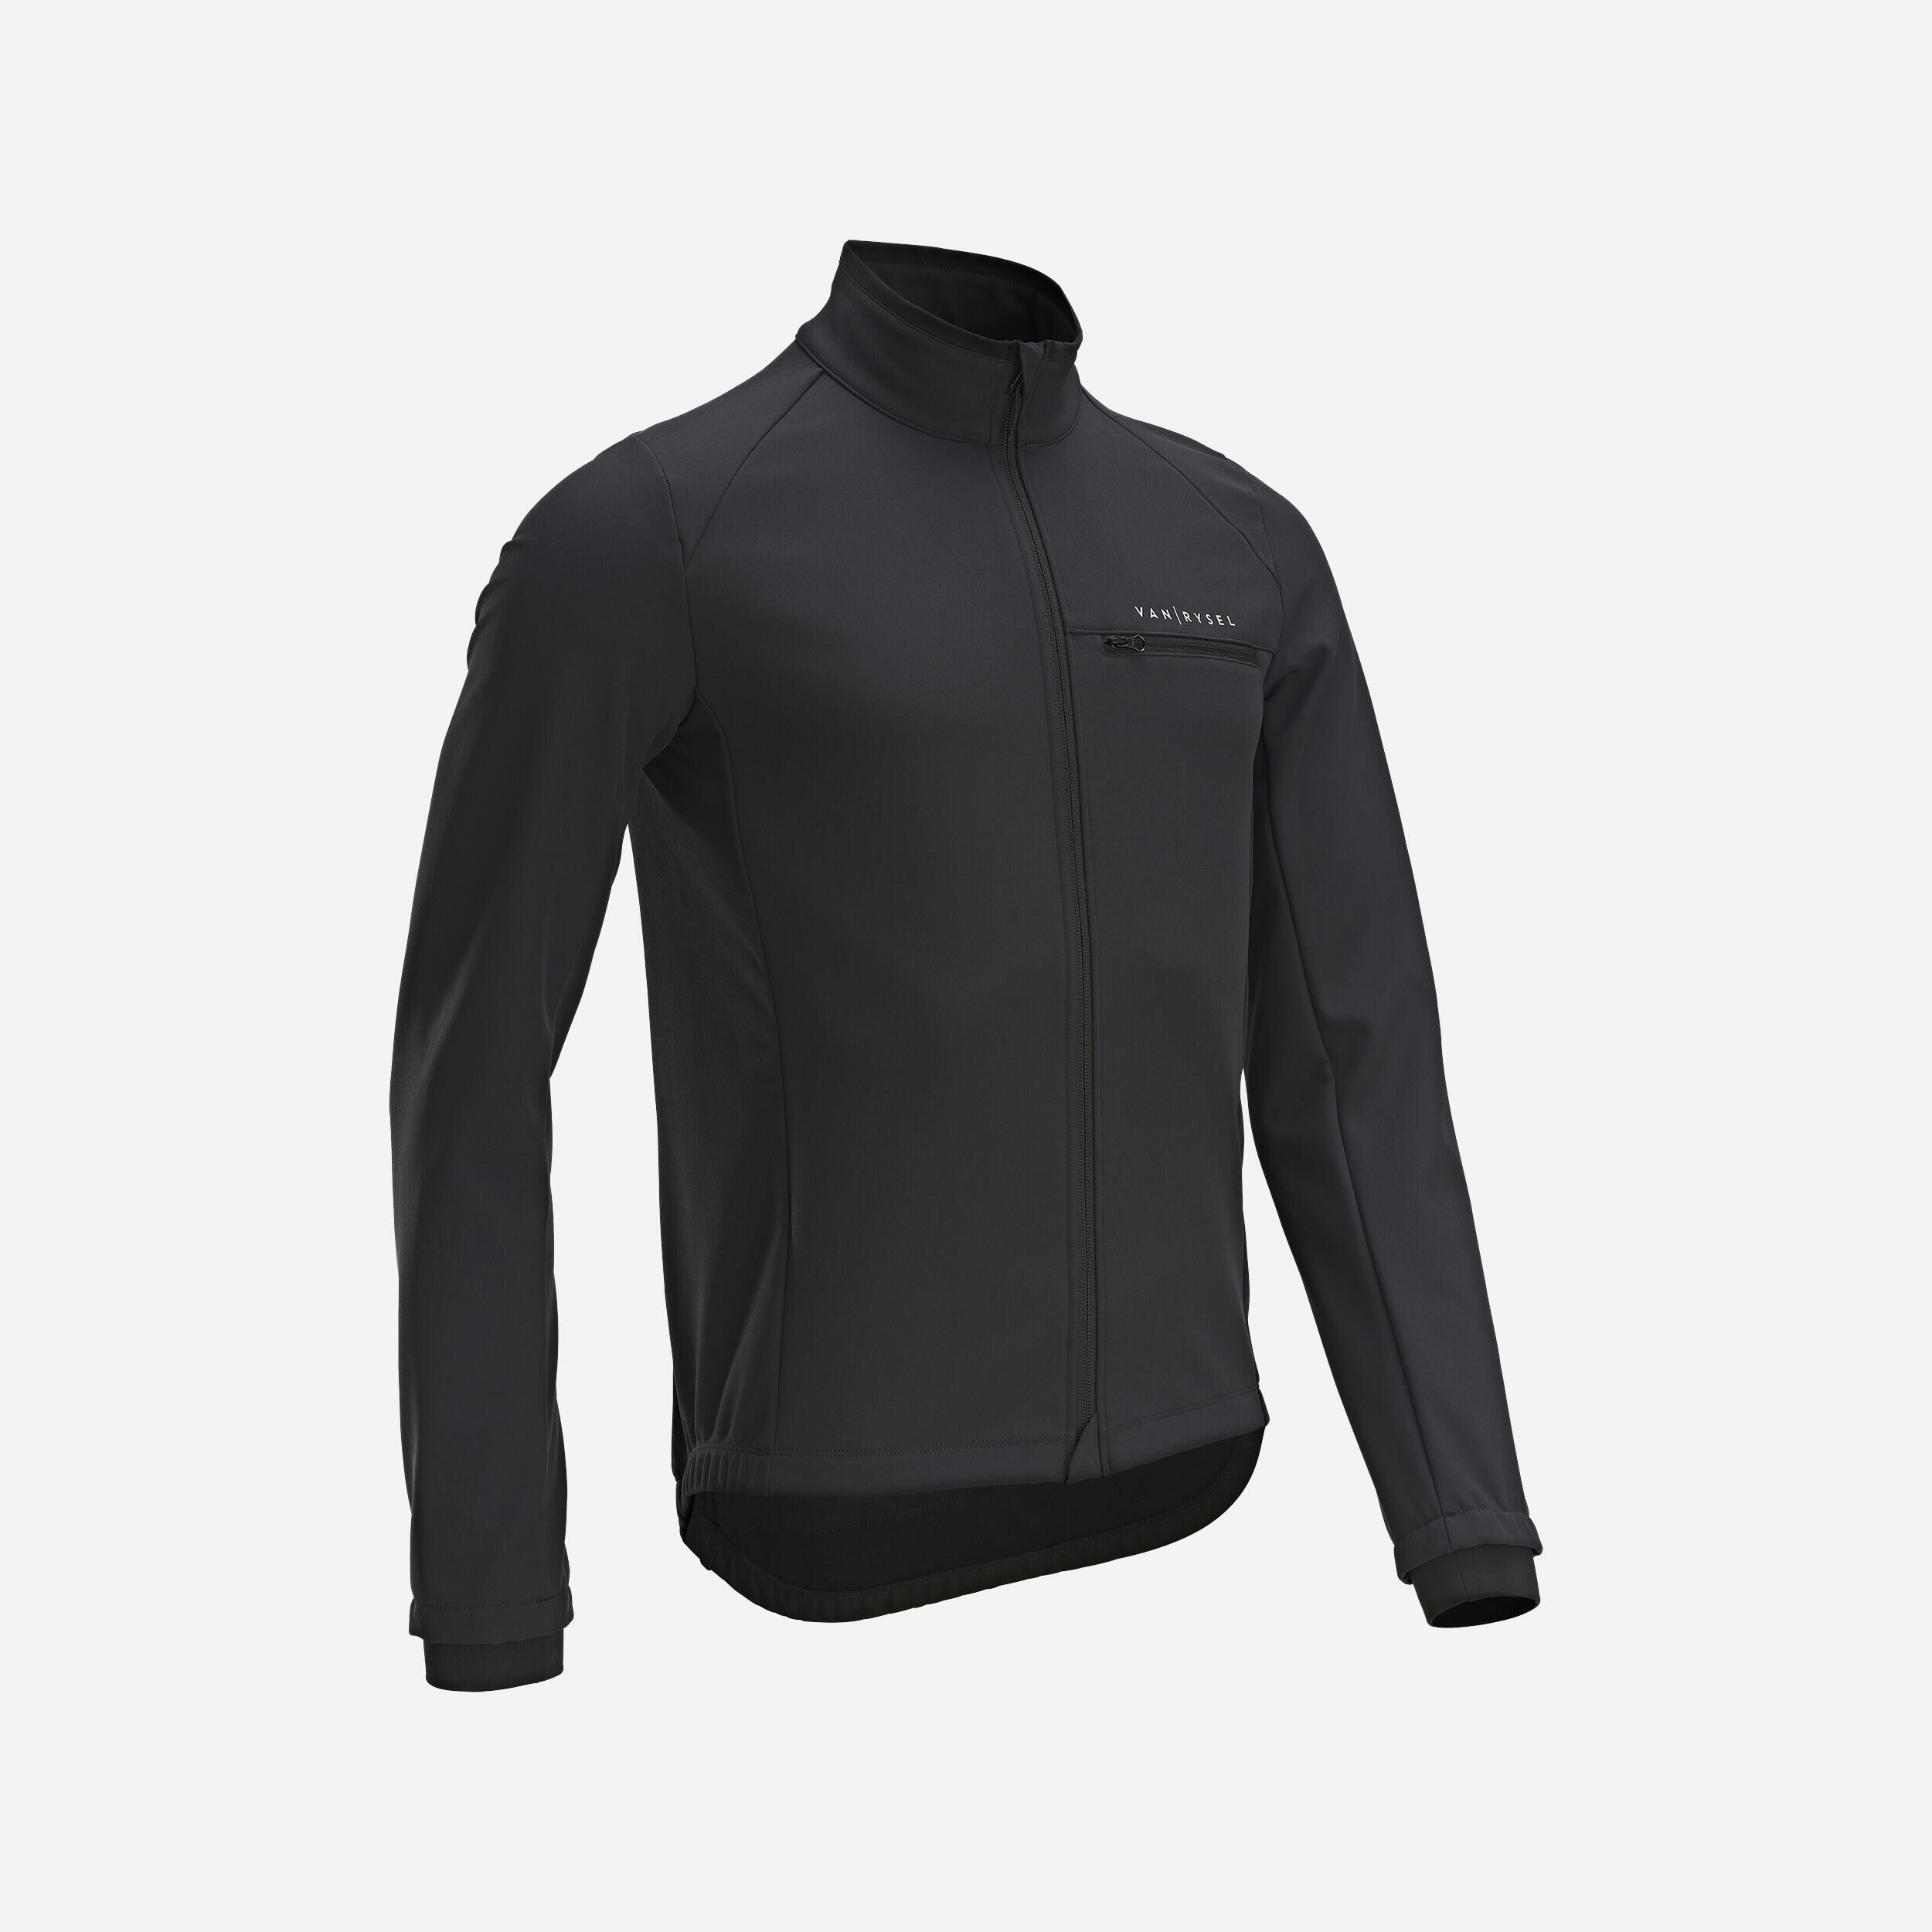 VAN RYSEL Men's Long-Sleeved Road Cycling Winter Jacket RC100 - Black